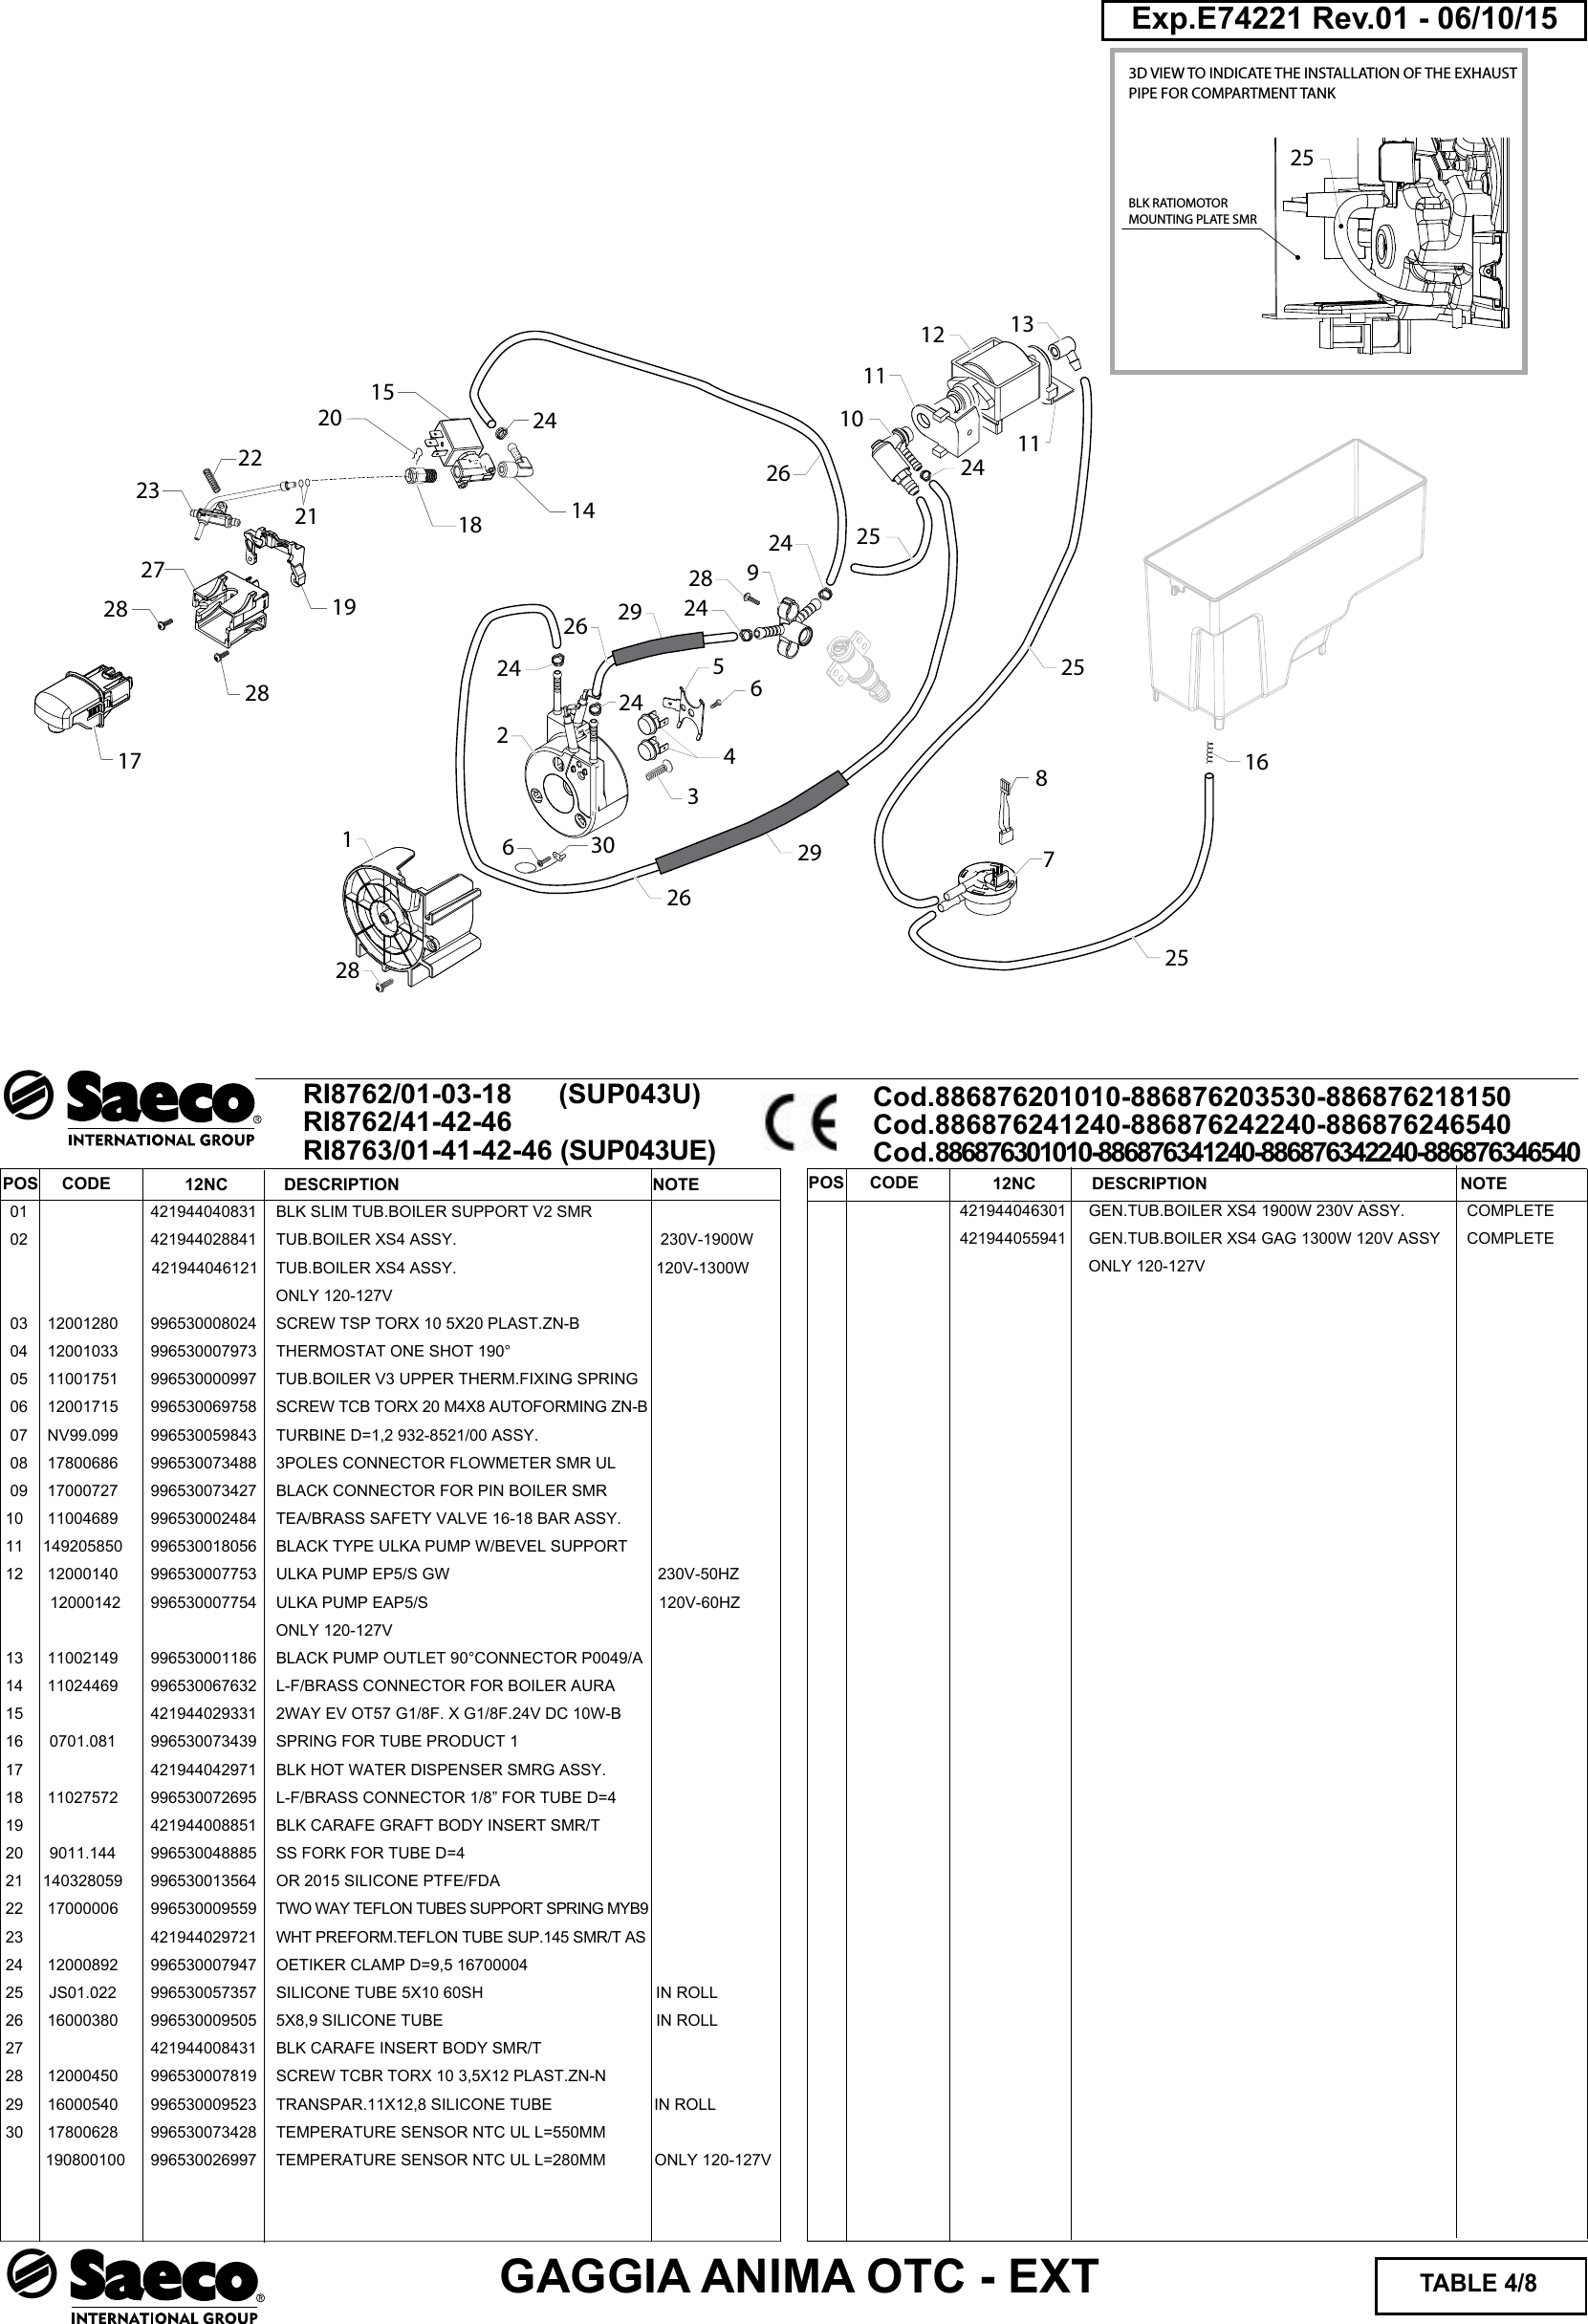 Page 4 of 8 - Gaggia Anima Prestige Parts Diagram User Manual